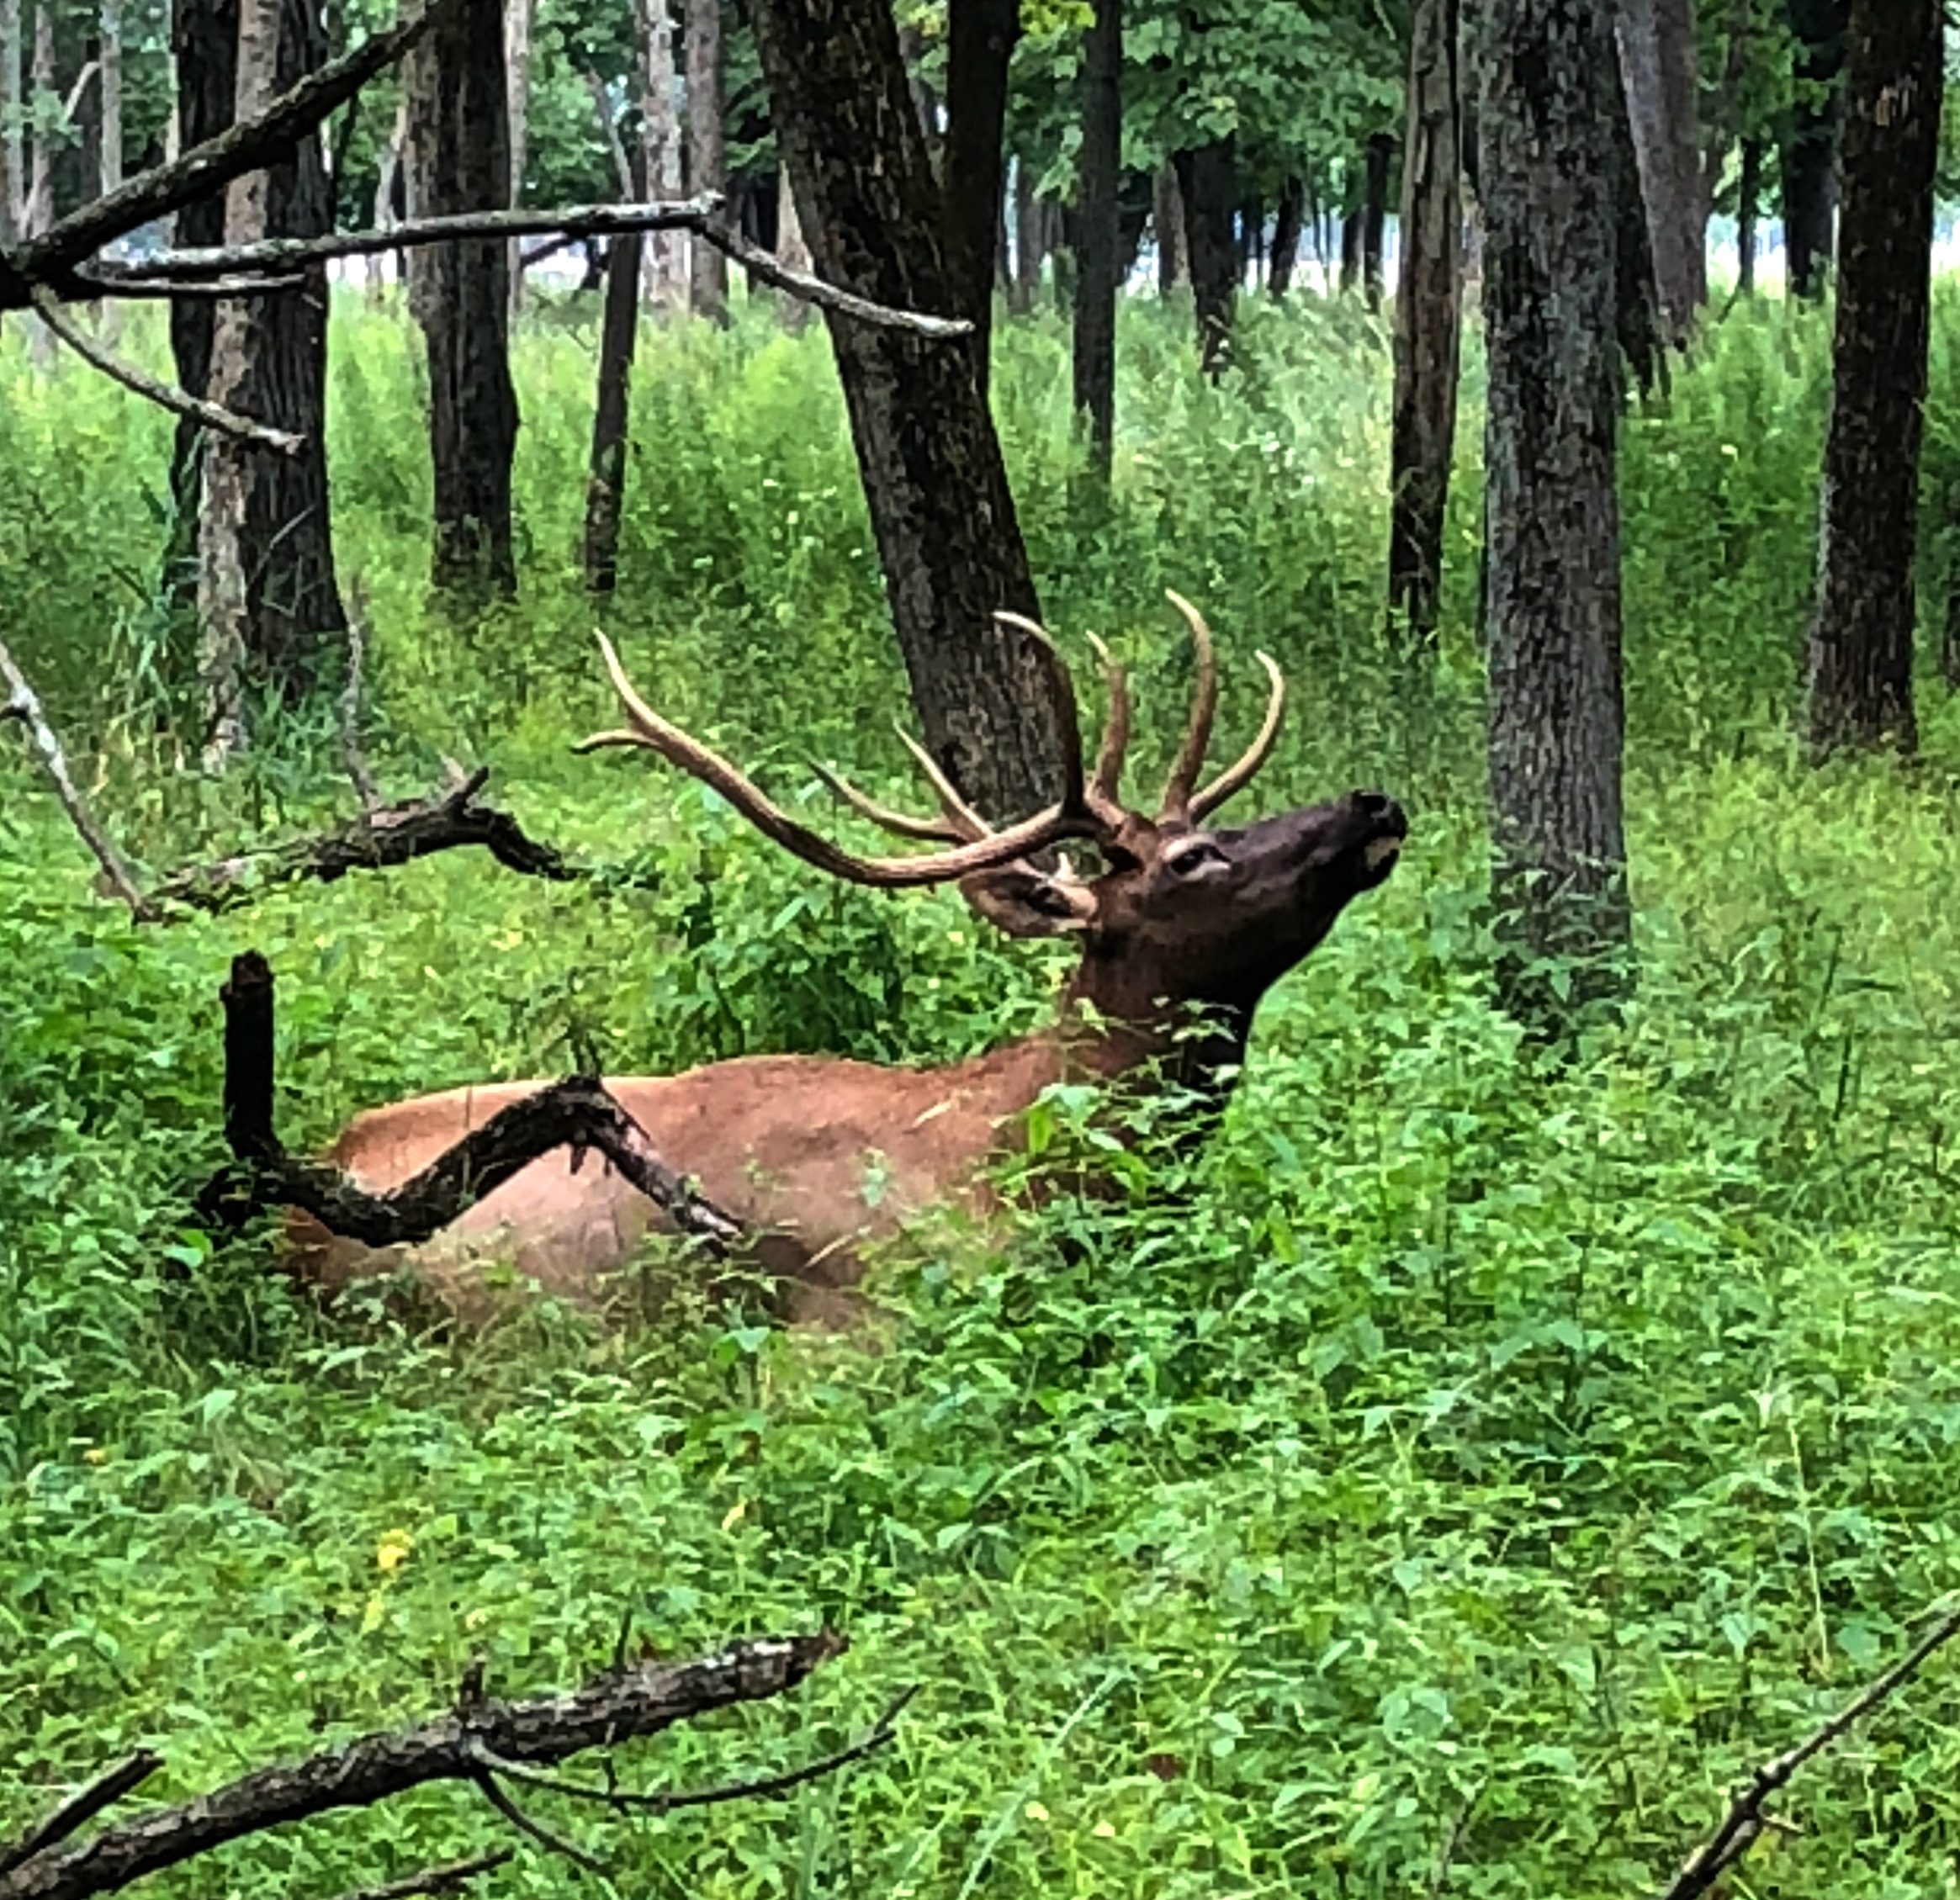 See Elk Near Chicago In Busse Woods #ElkPreserve #wildlife #cookcountypreserves #bussewoods #northsuburbs #hikingspots #fishingspots #elkencounter